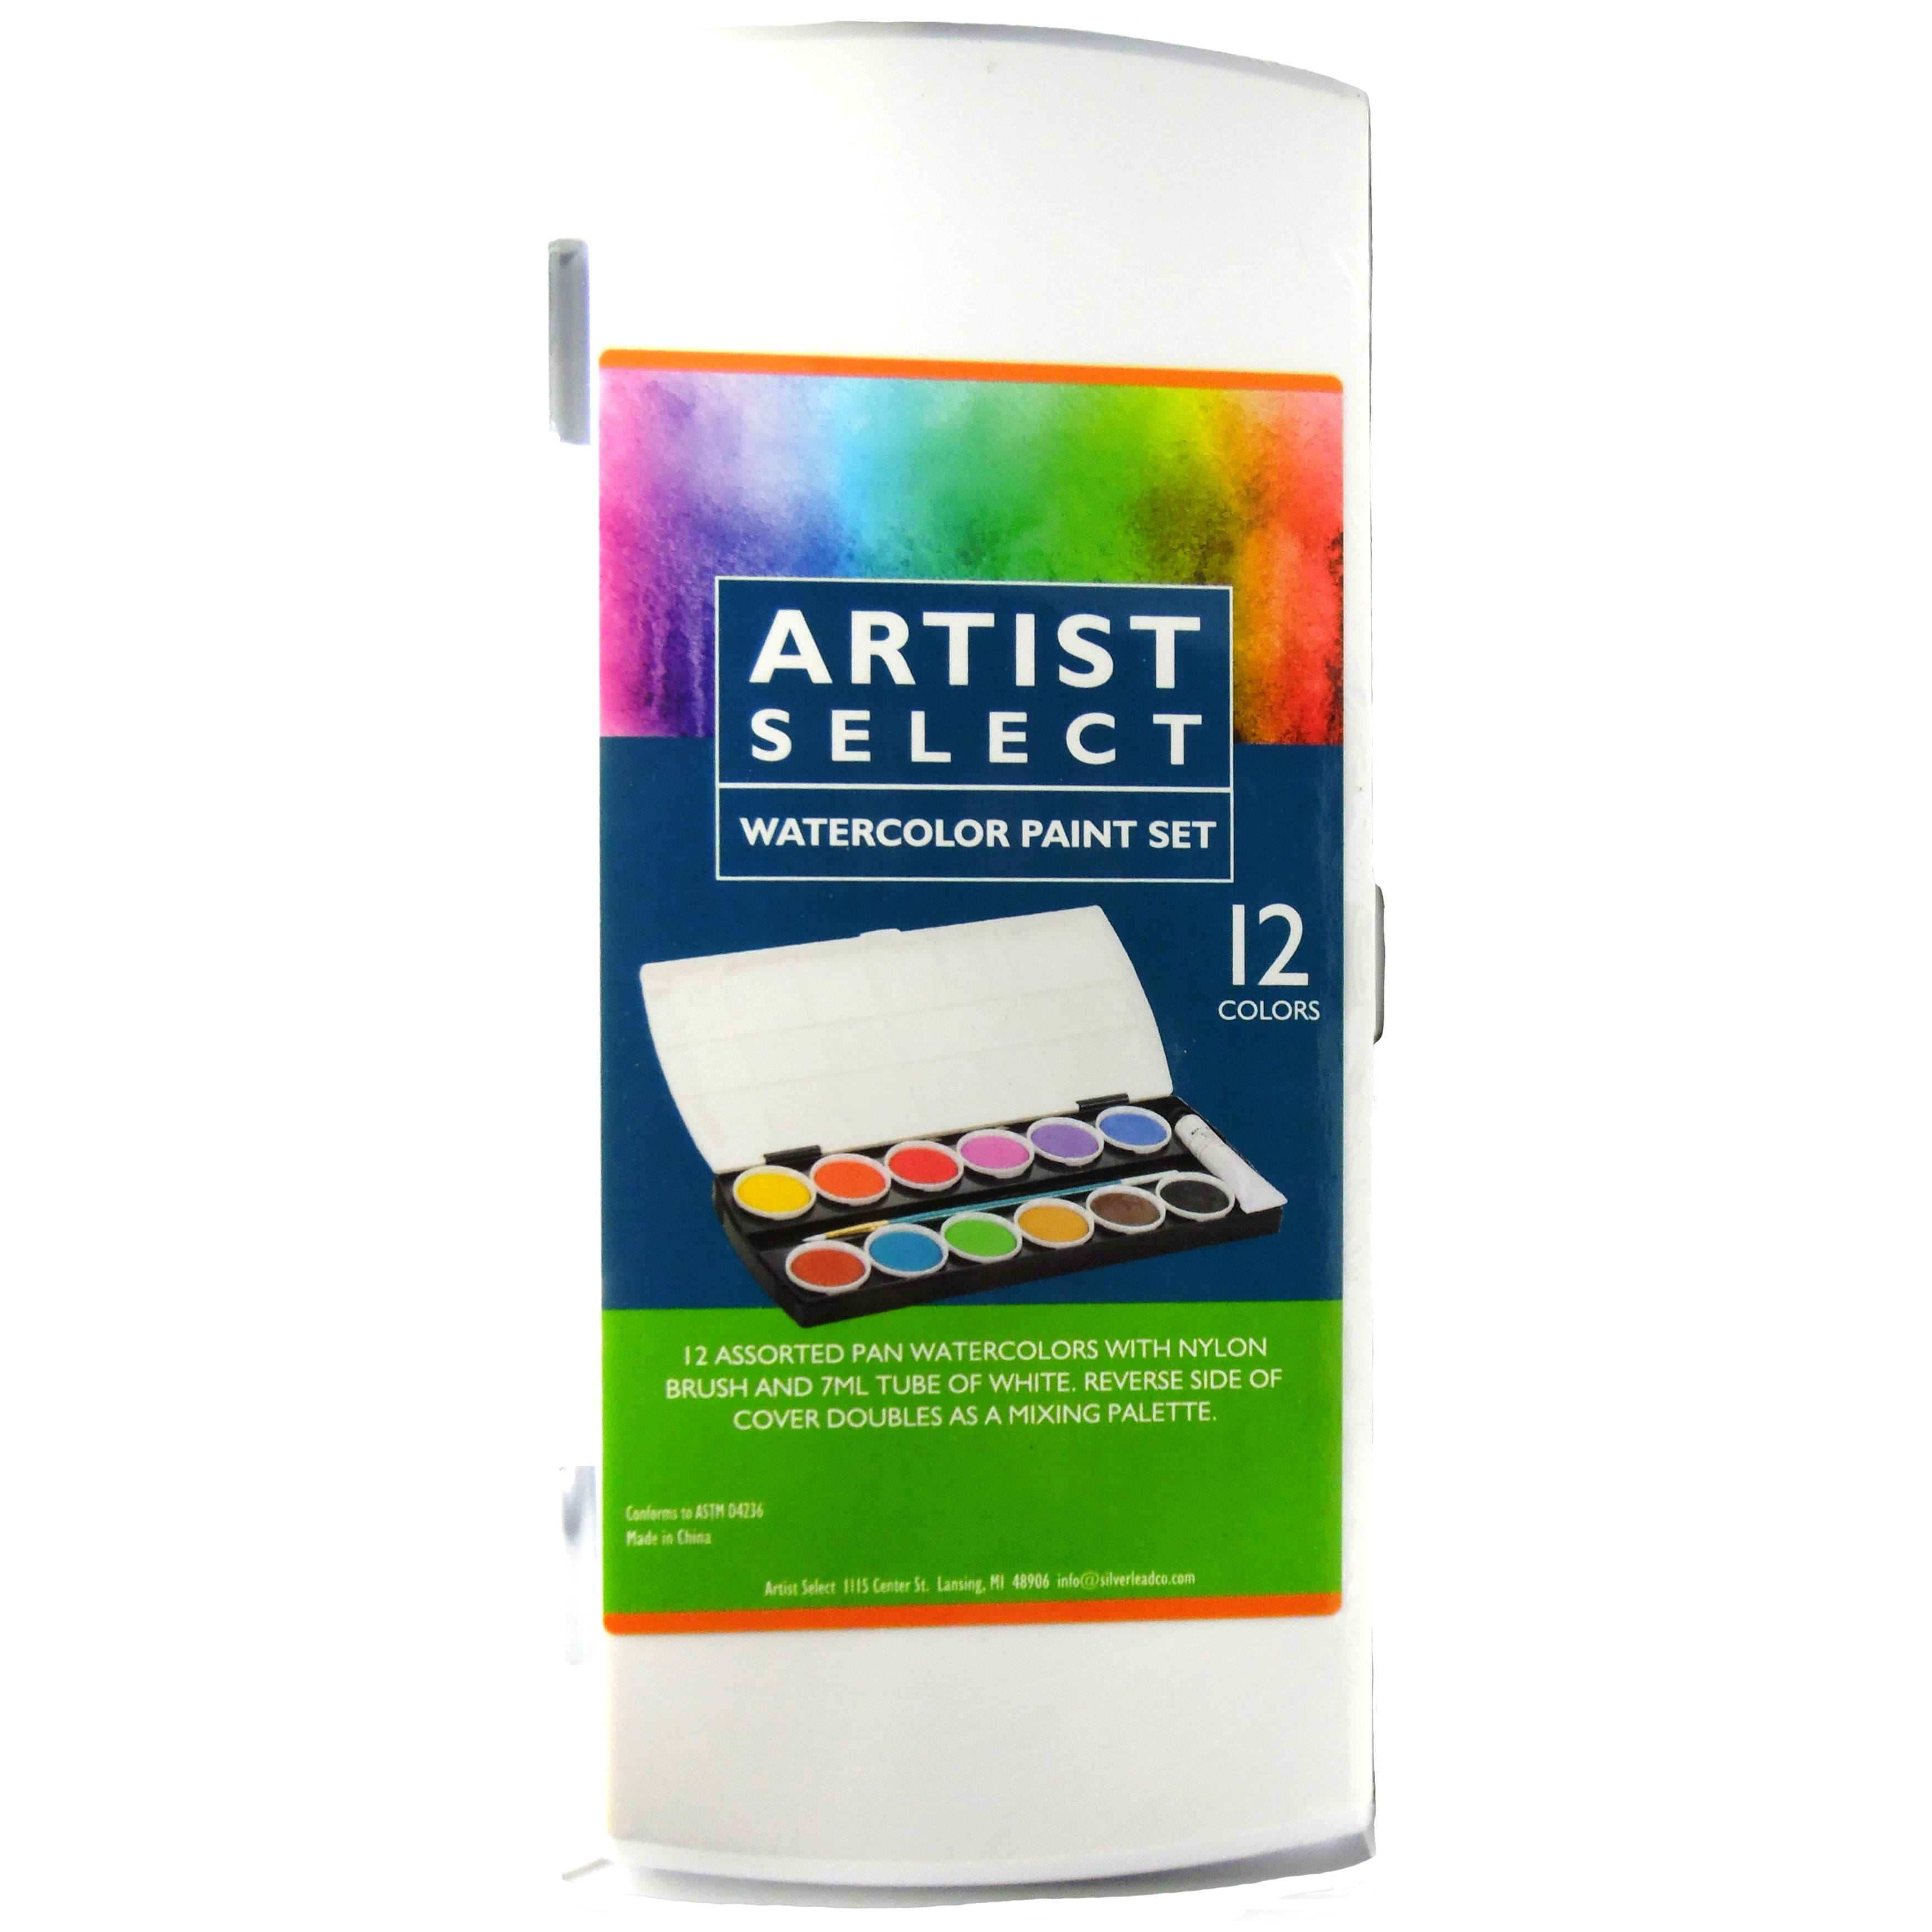 Artist Select 12 Color Professional Watercolor Paint Set